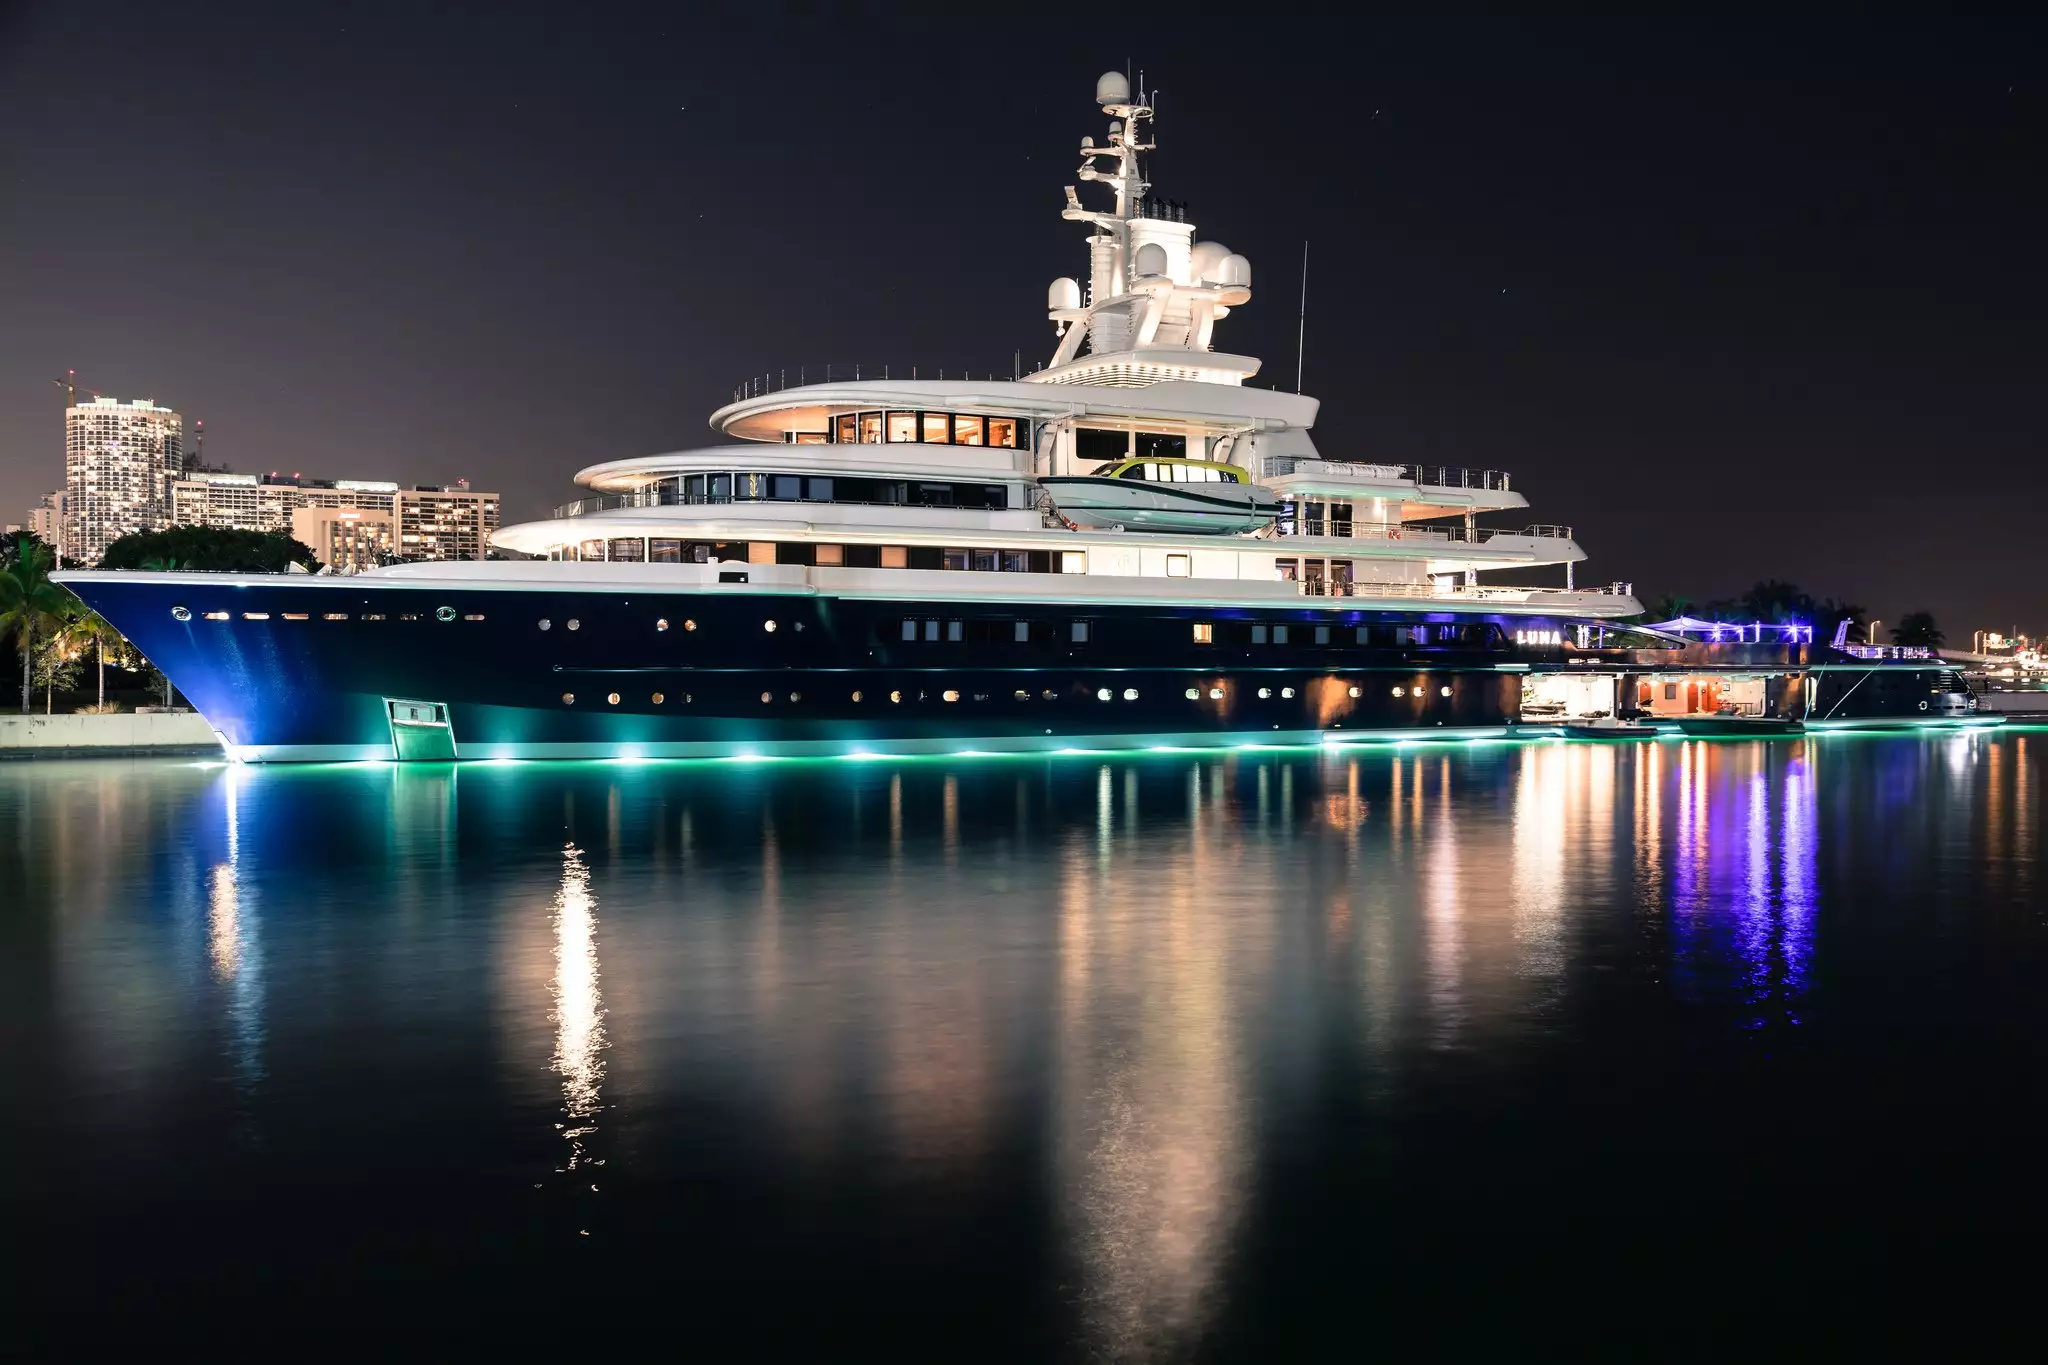 Yacht Luna – 115m – Lloyd Werft - Farkhad Akhmedov